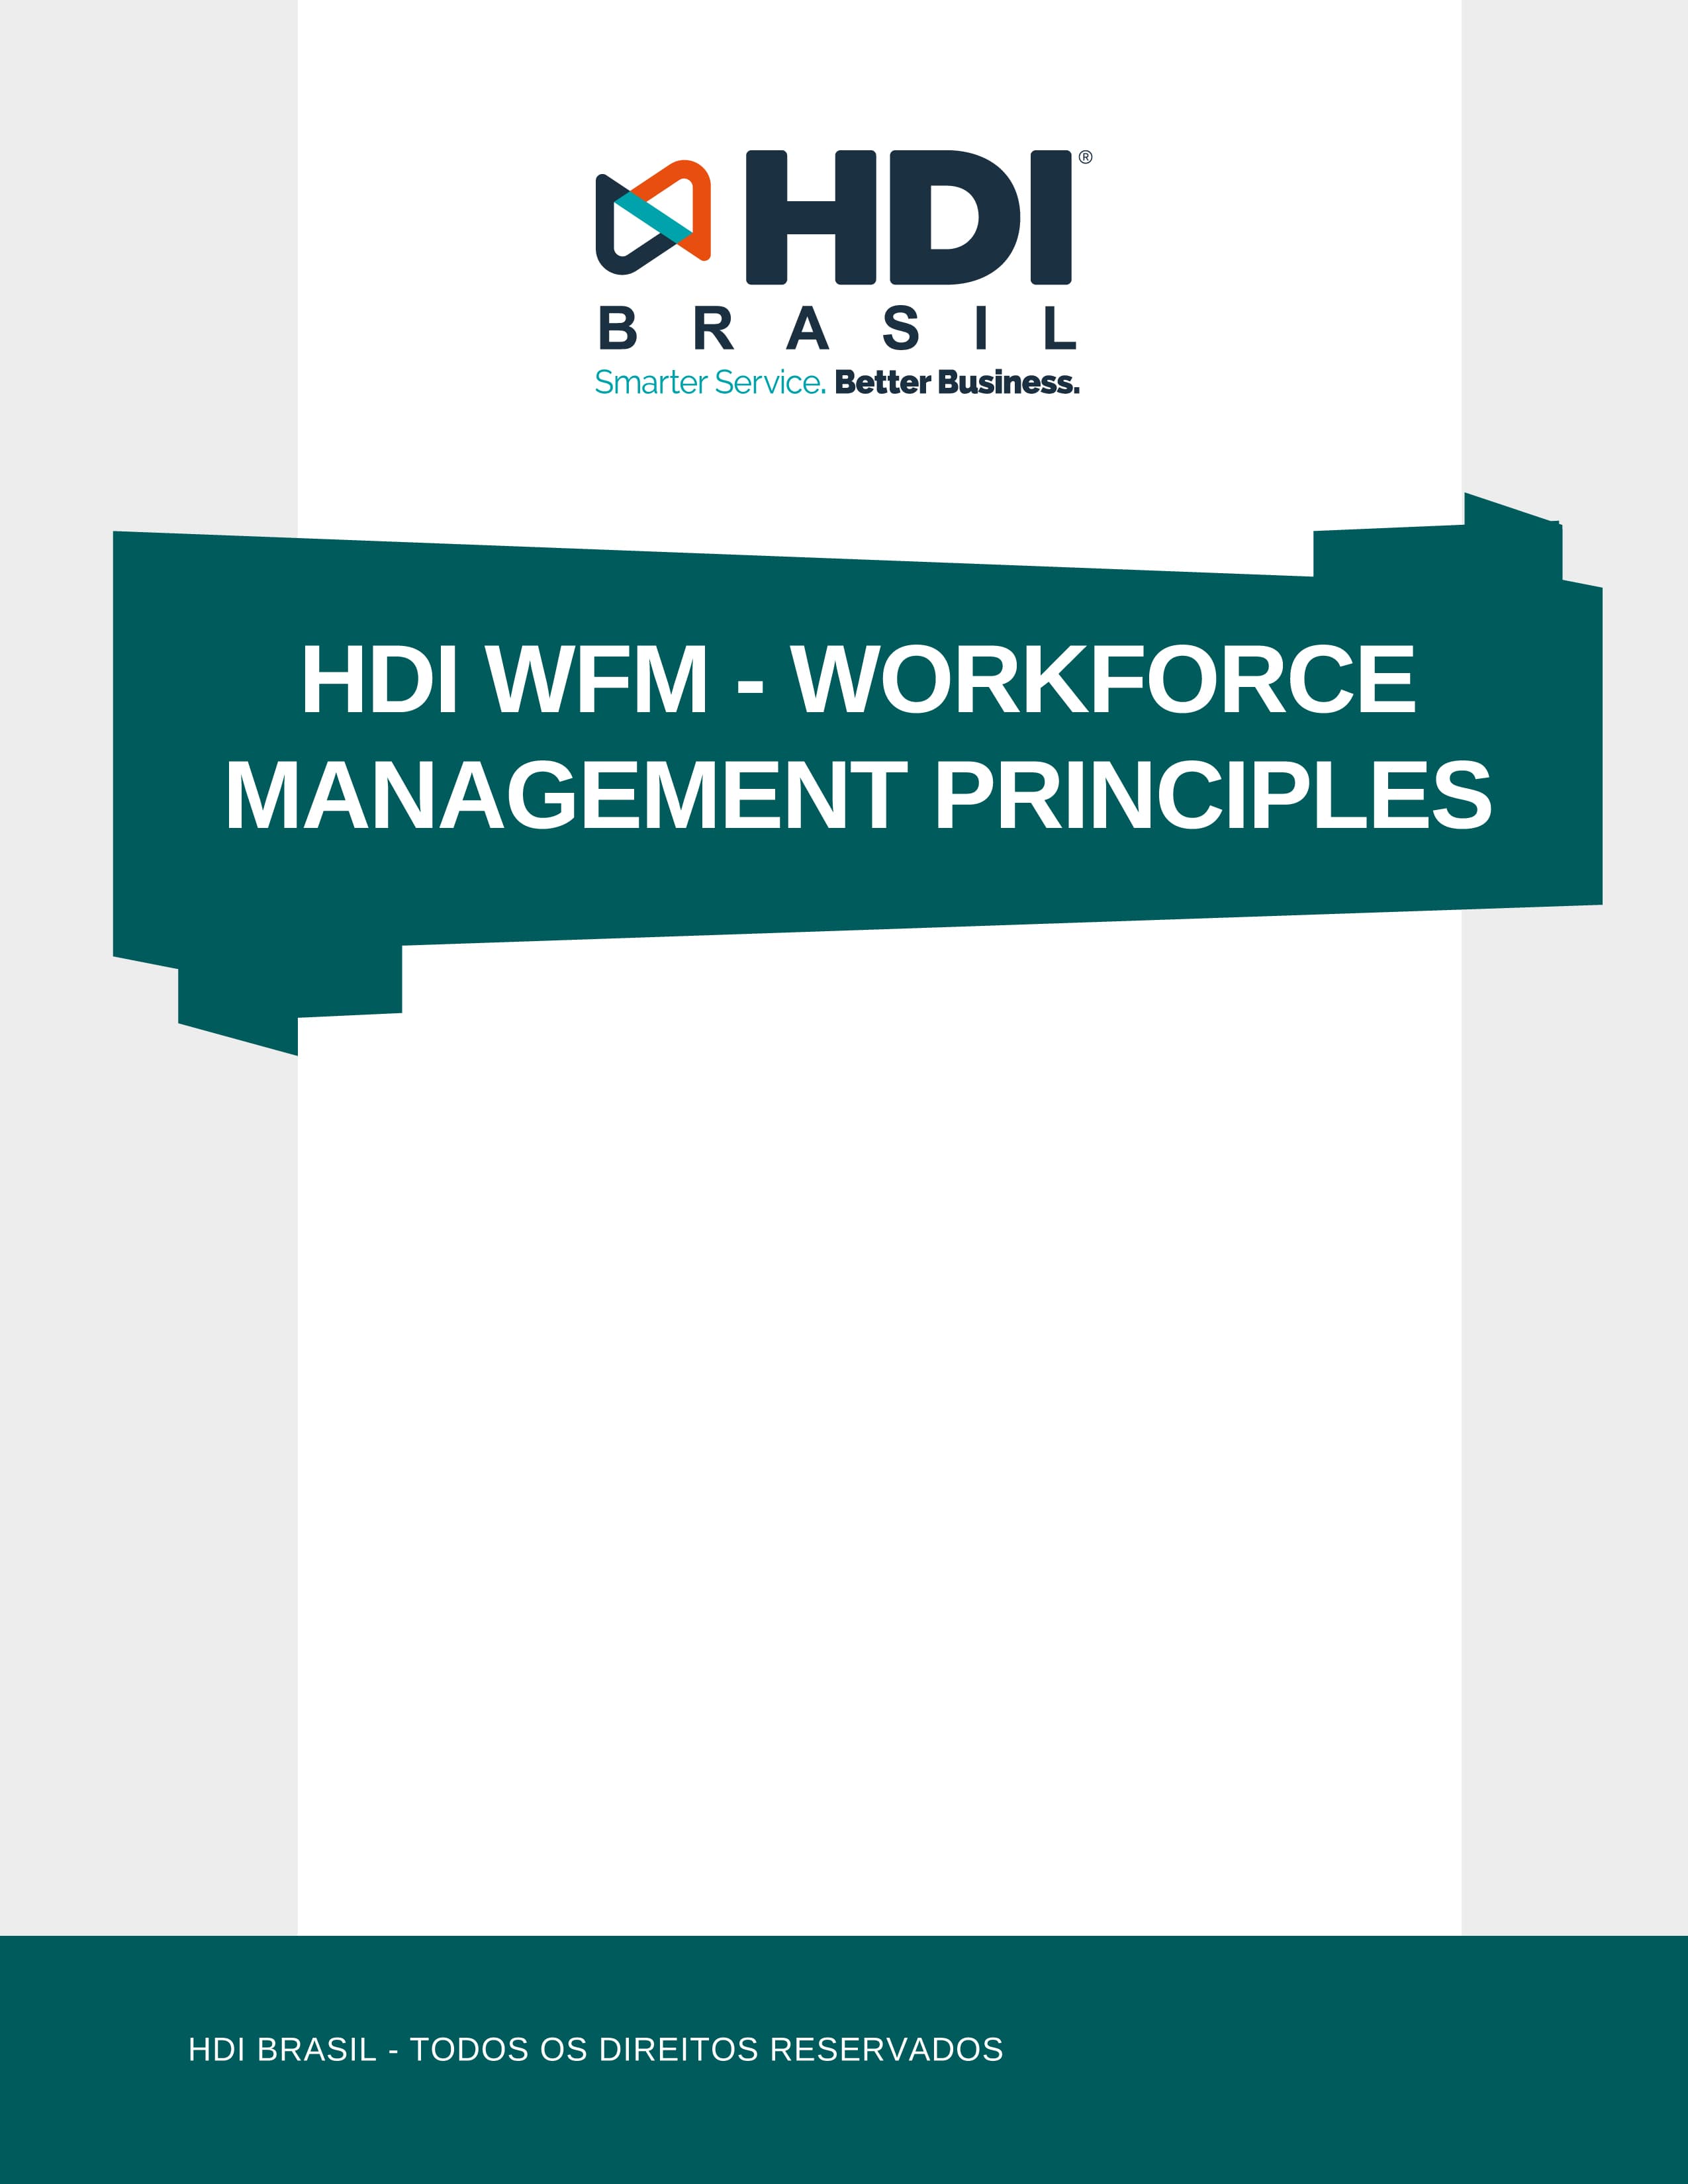 HDI WFM - WORKFORCE MANAGEMENT PRINCIPLES